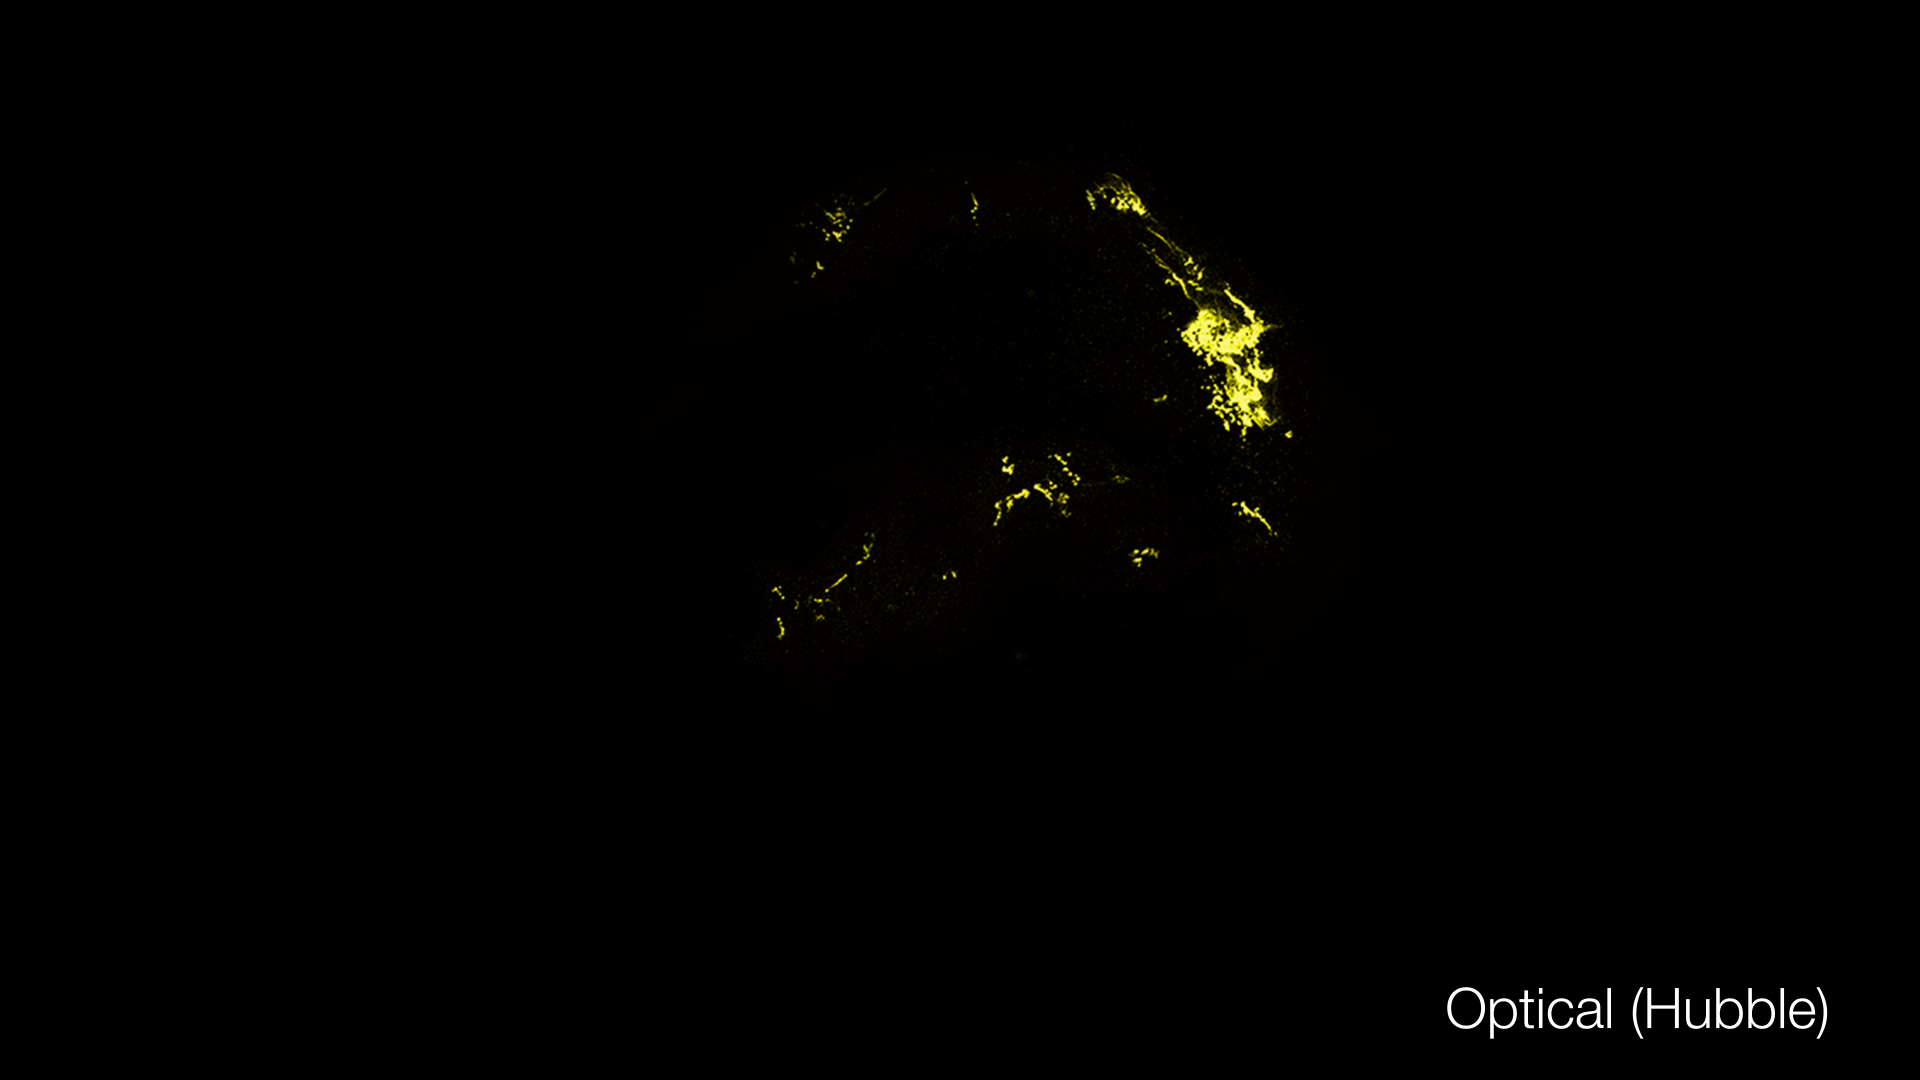 Preview Image for Kepler Supernova Remnant